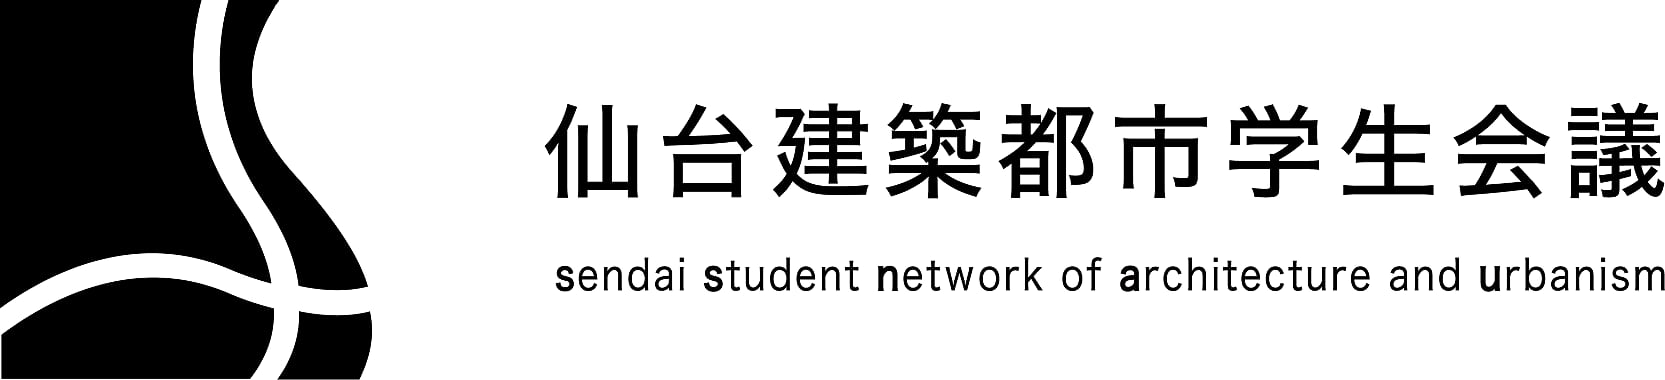 仙台建築都市学生会議ロゴ